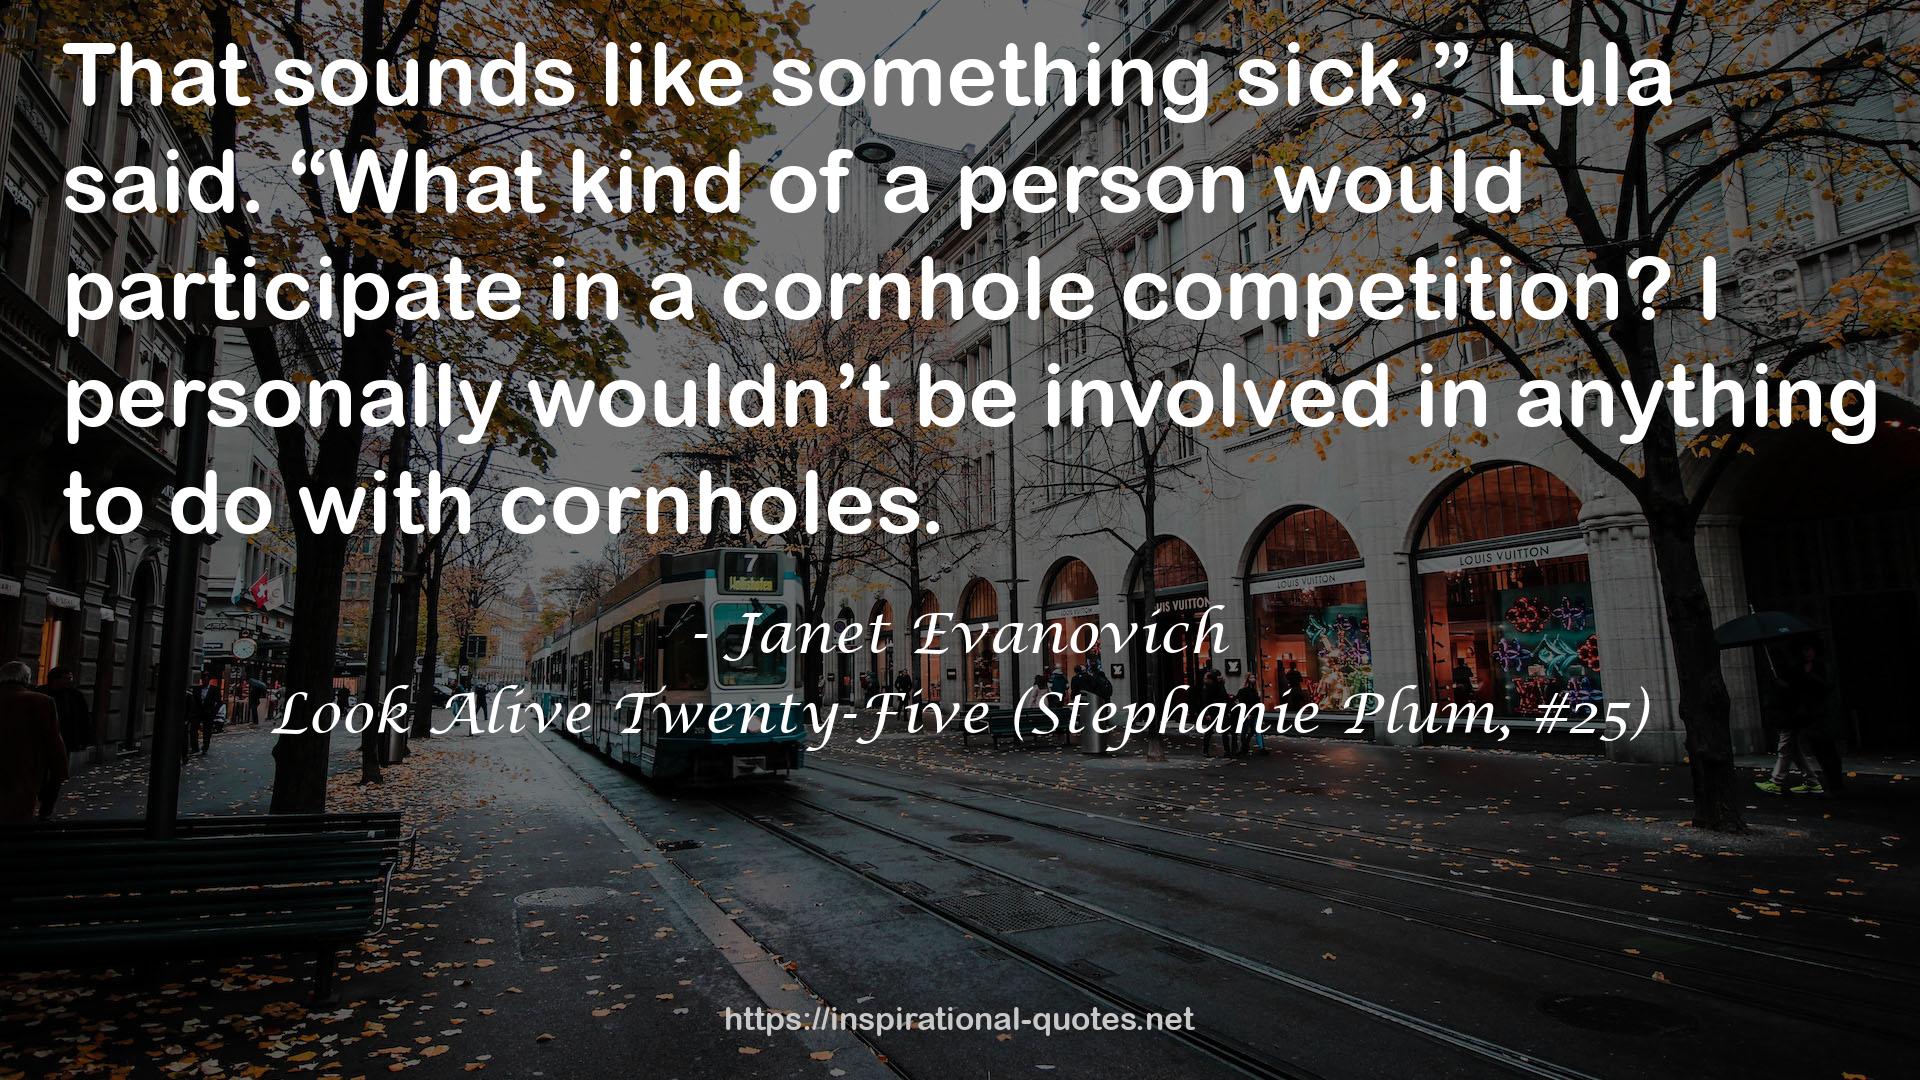 Look Alive Twenty-Five (Stephanie Plum, #25) QUOTES